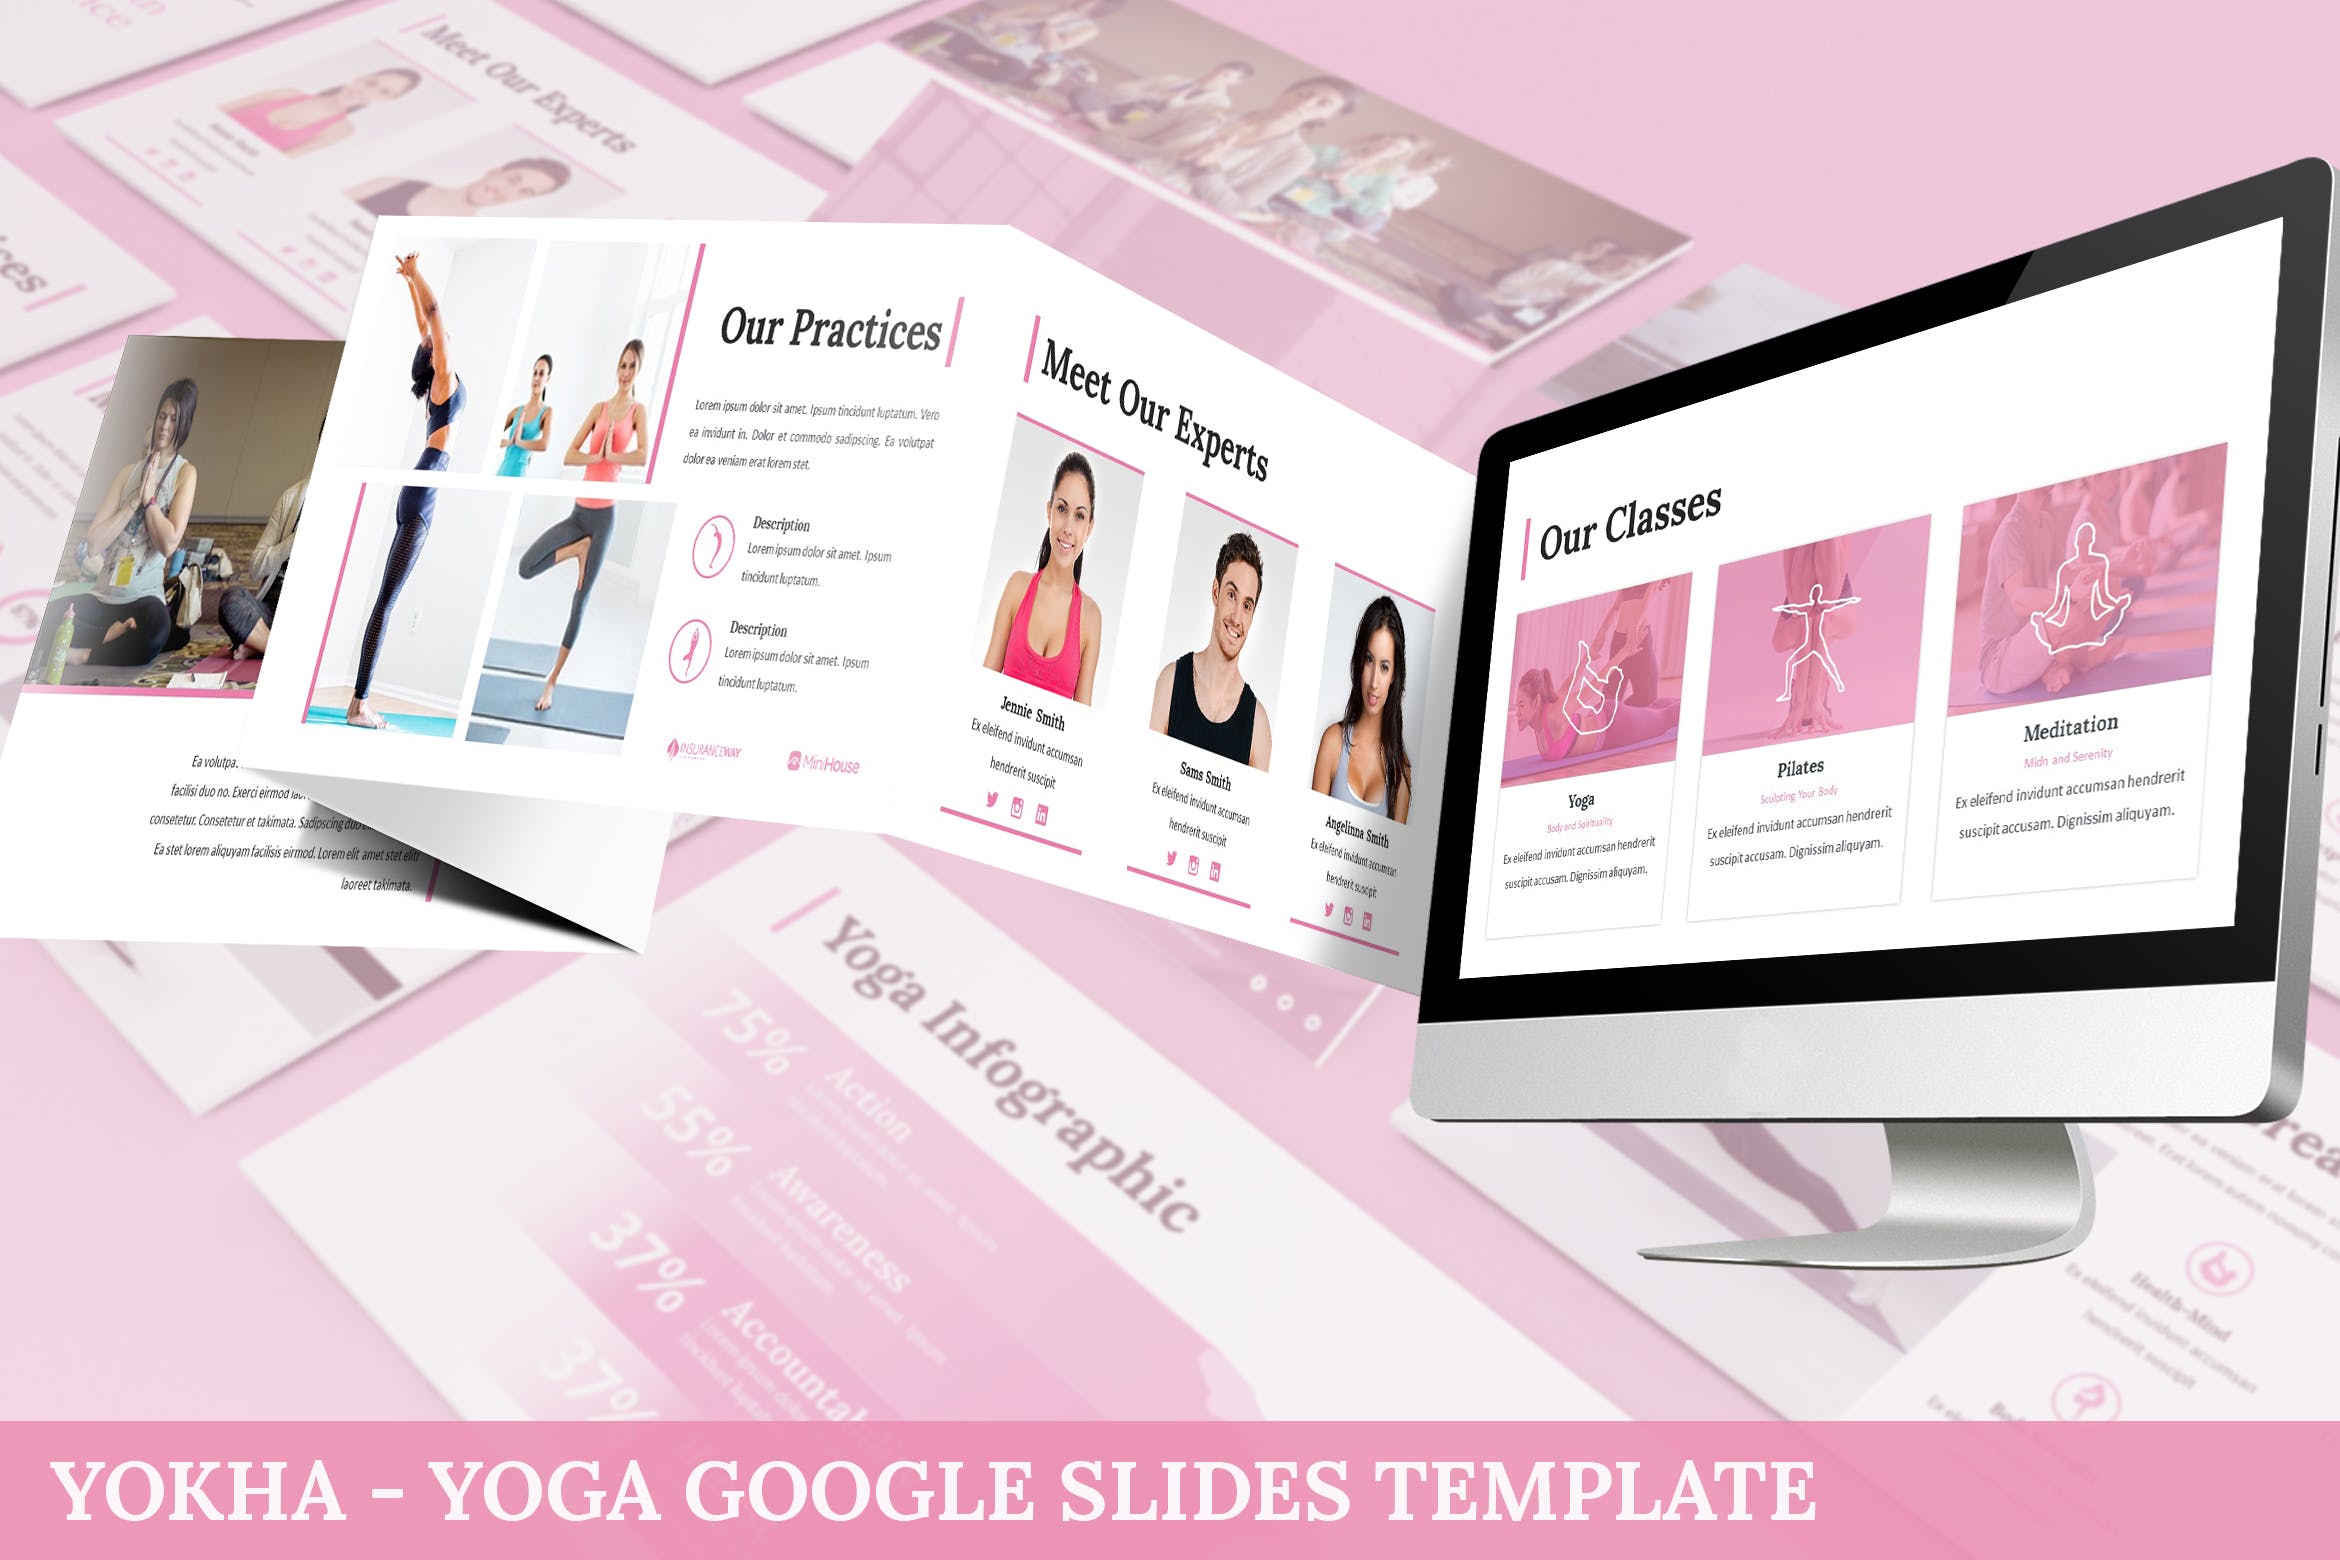 瑜伽培训课程/瑜伽培训机构简介谷歌幻灯片设计模板 Yokha – Yoga Google Slides Template插图